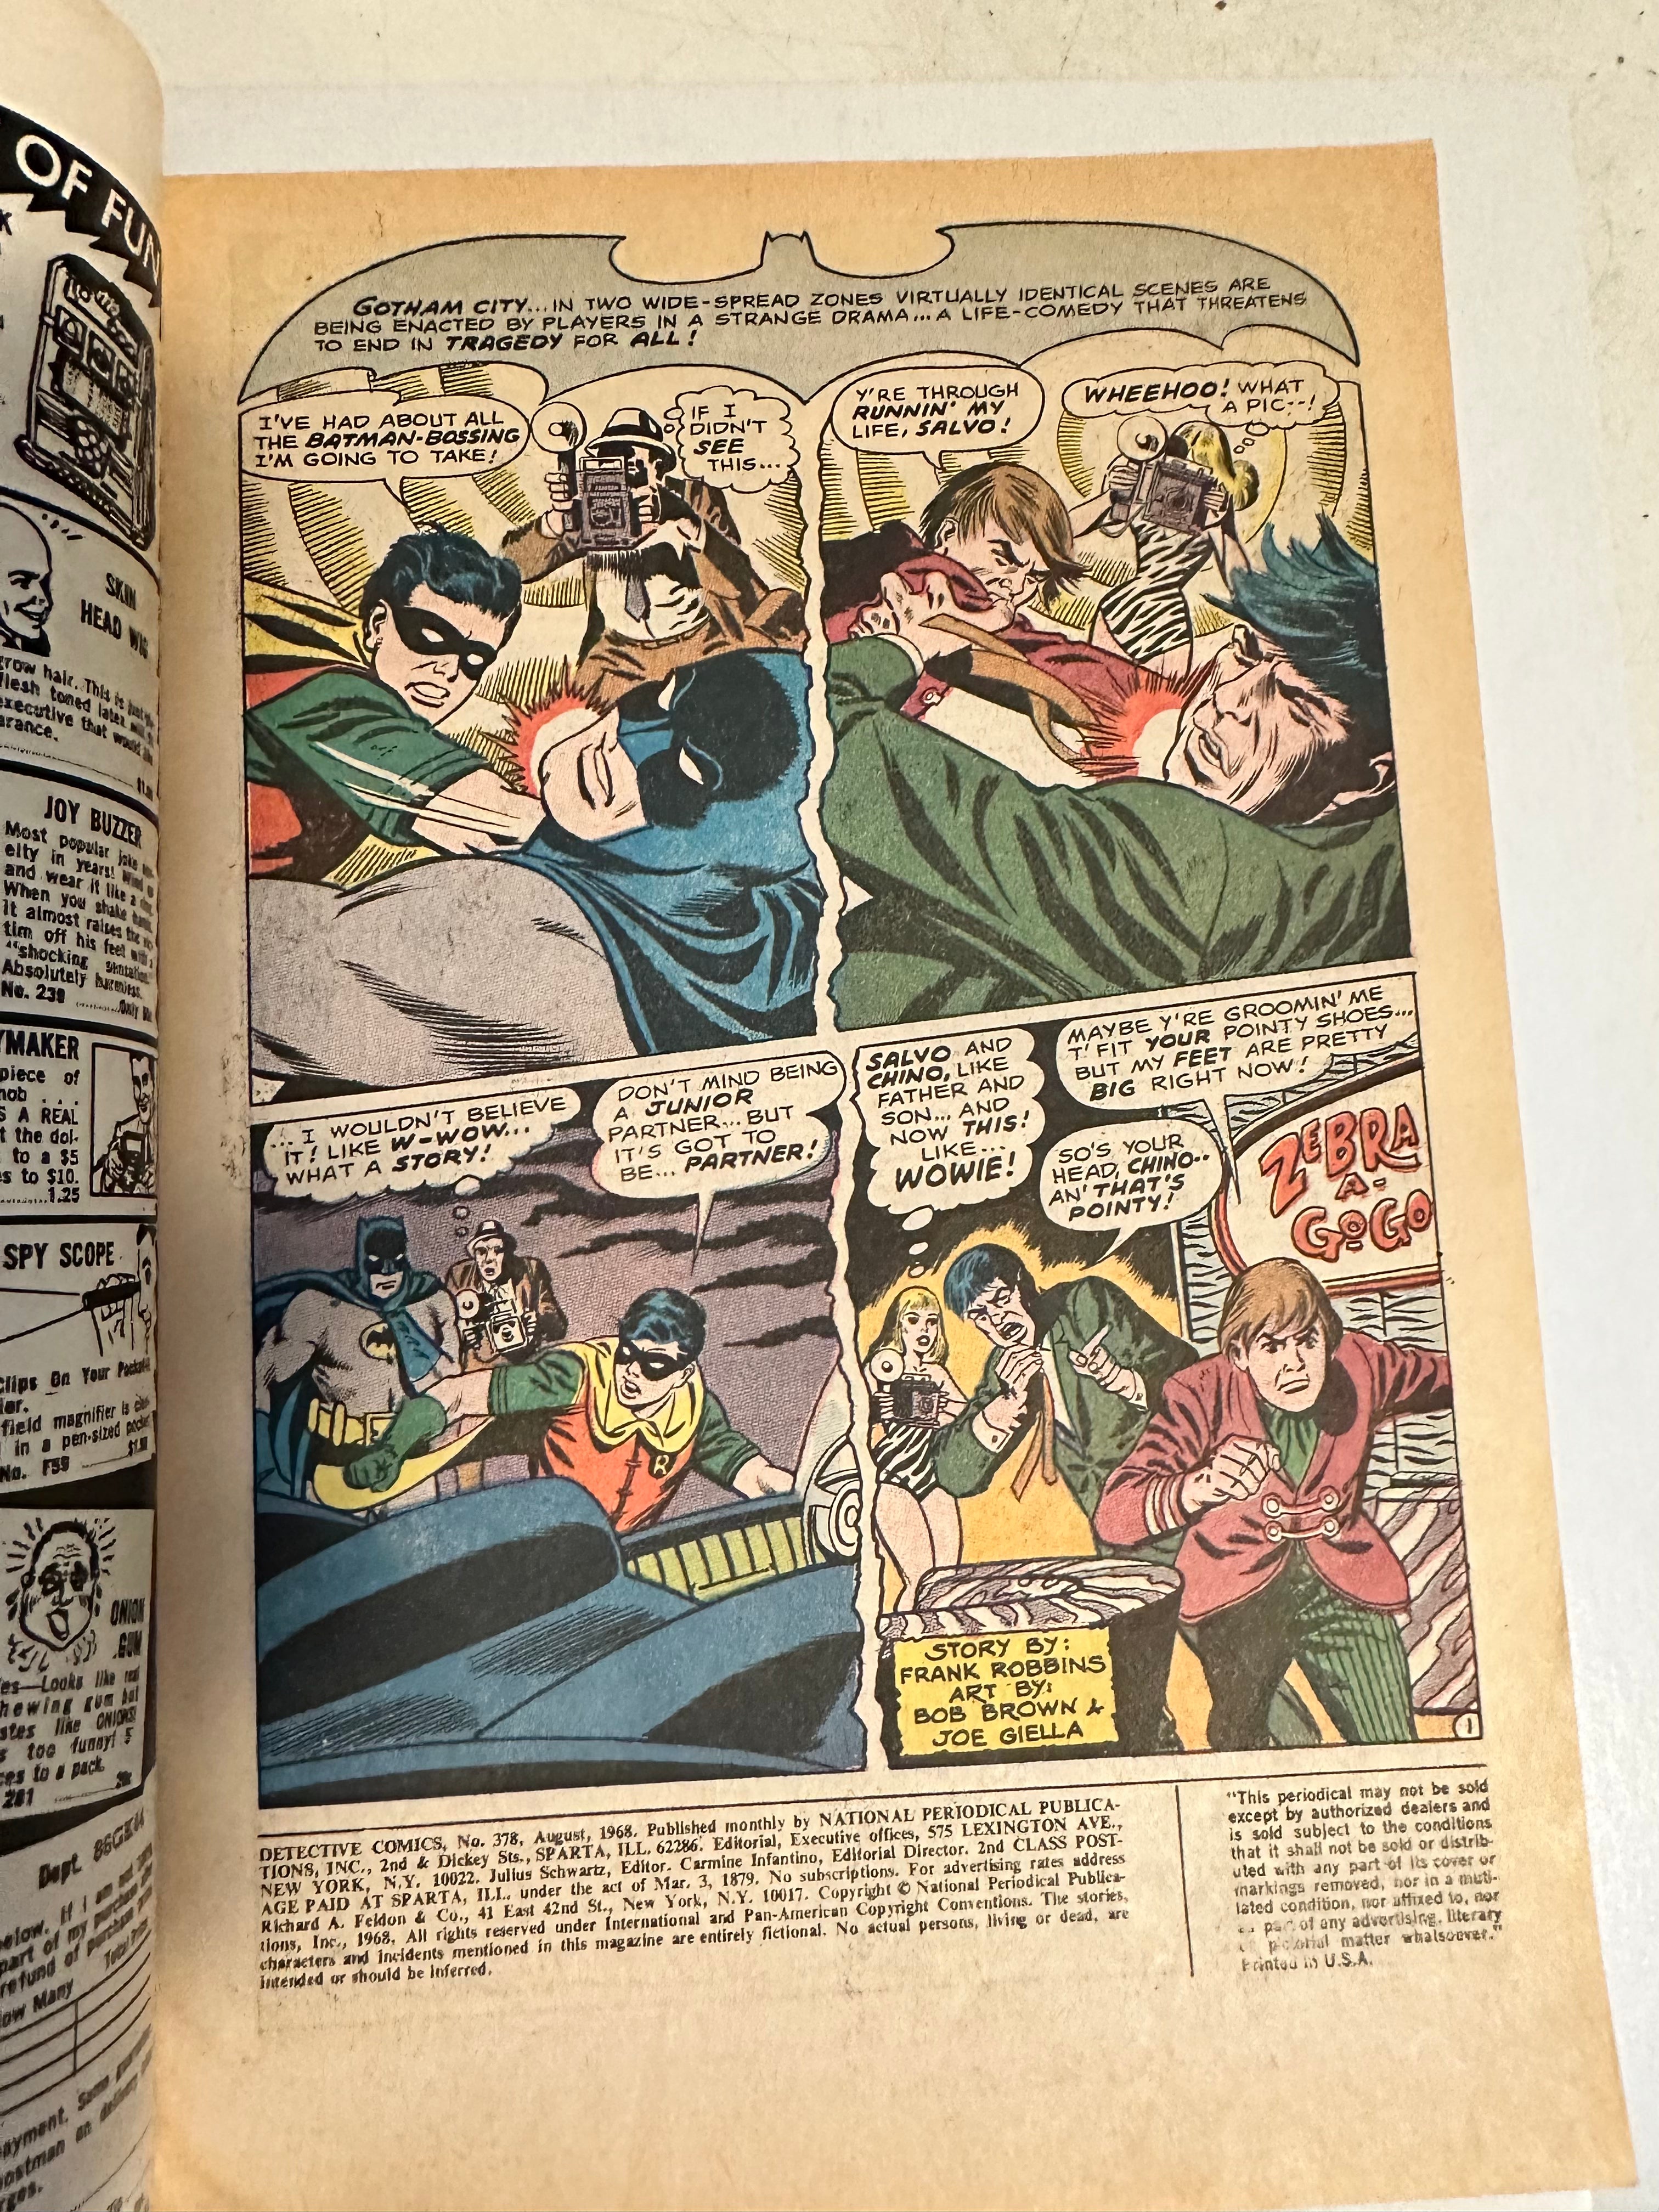 Batman, Detective Comics, number 378, VF condition, 1968